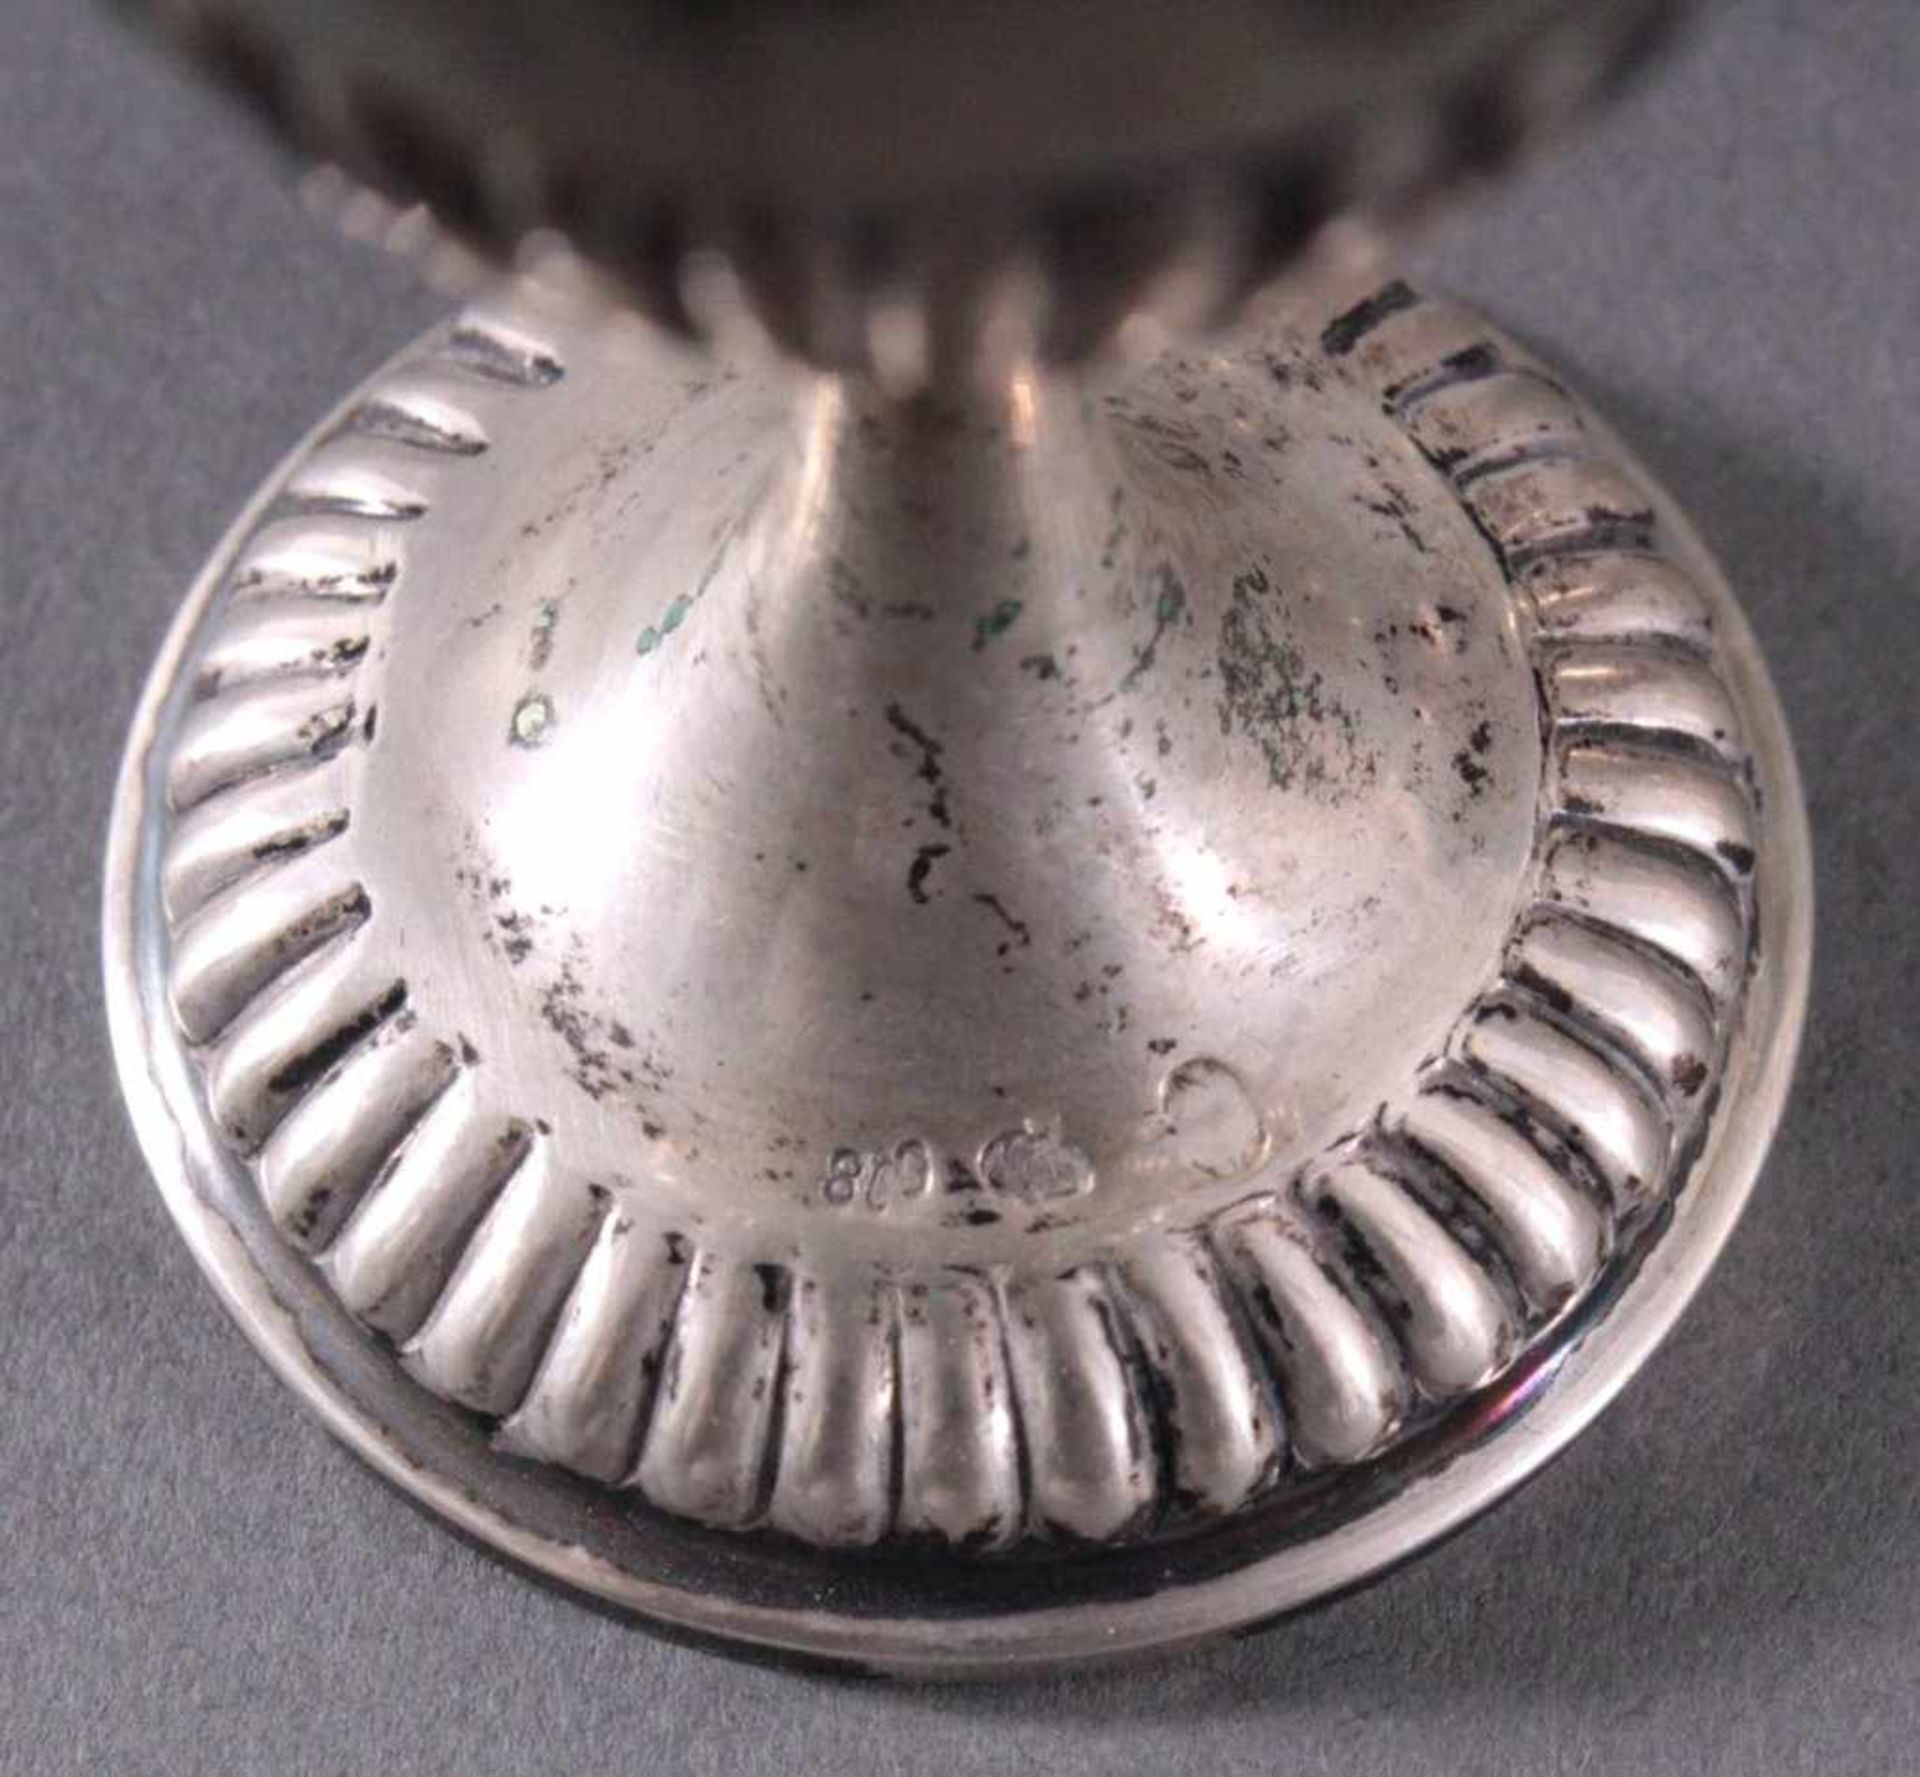 4 silberne Eierbecher um 1900Deutsche Punze Sichel und Krone 800er Silber, ca. Höhe 7 cm,191 g. - Image 3 of 4